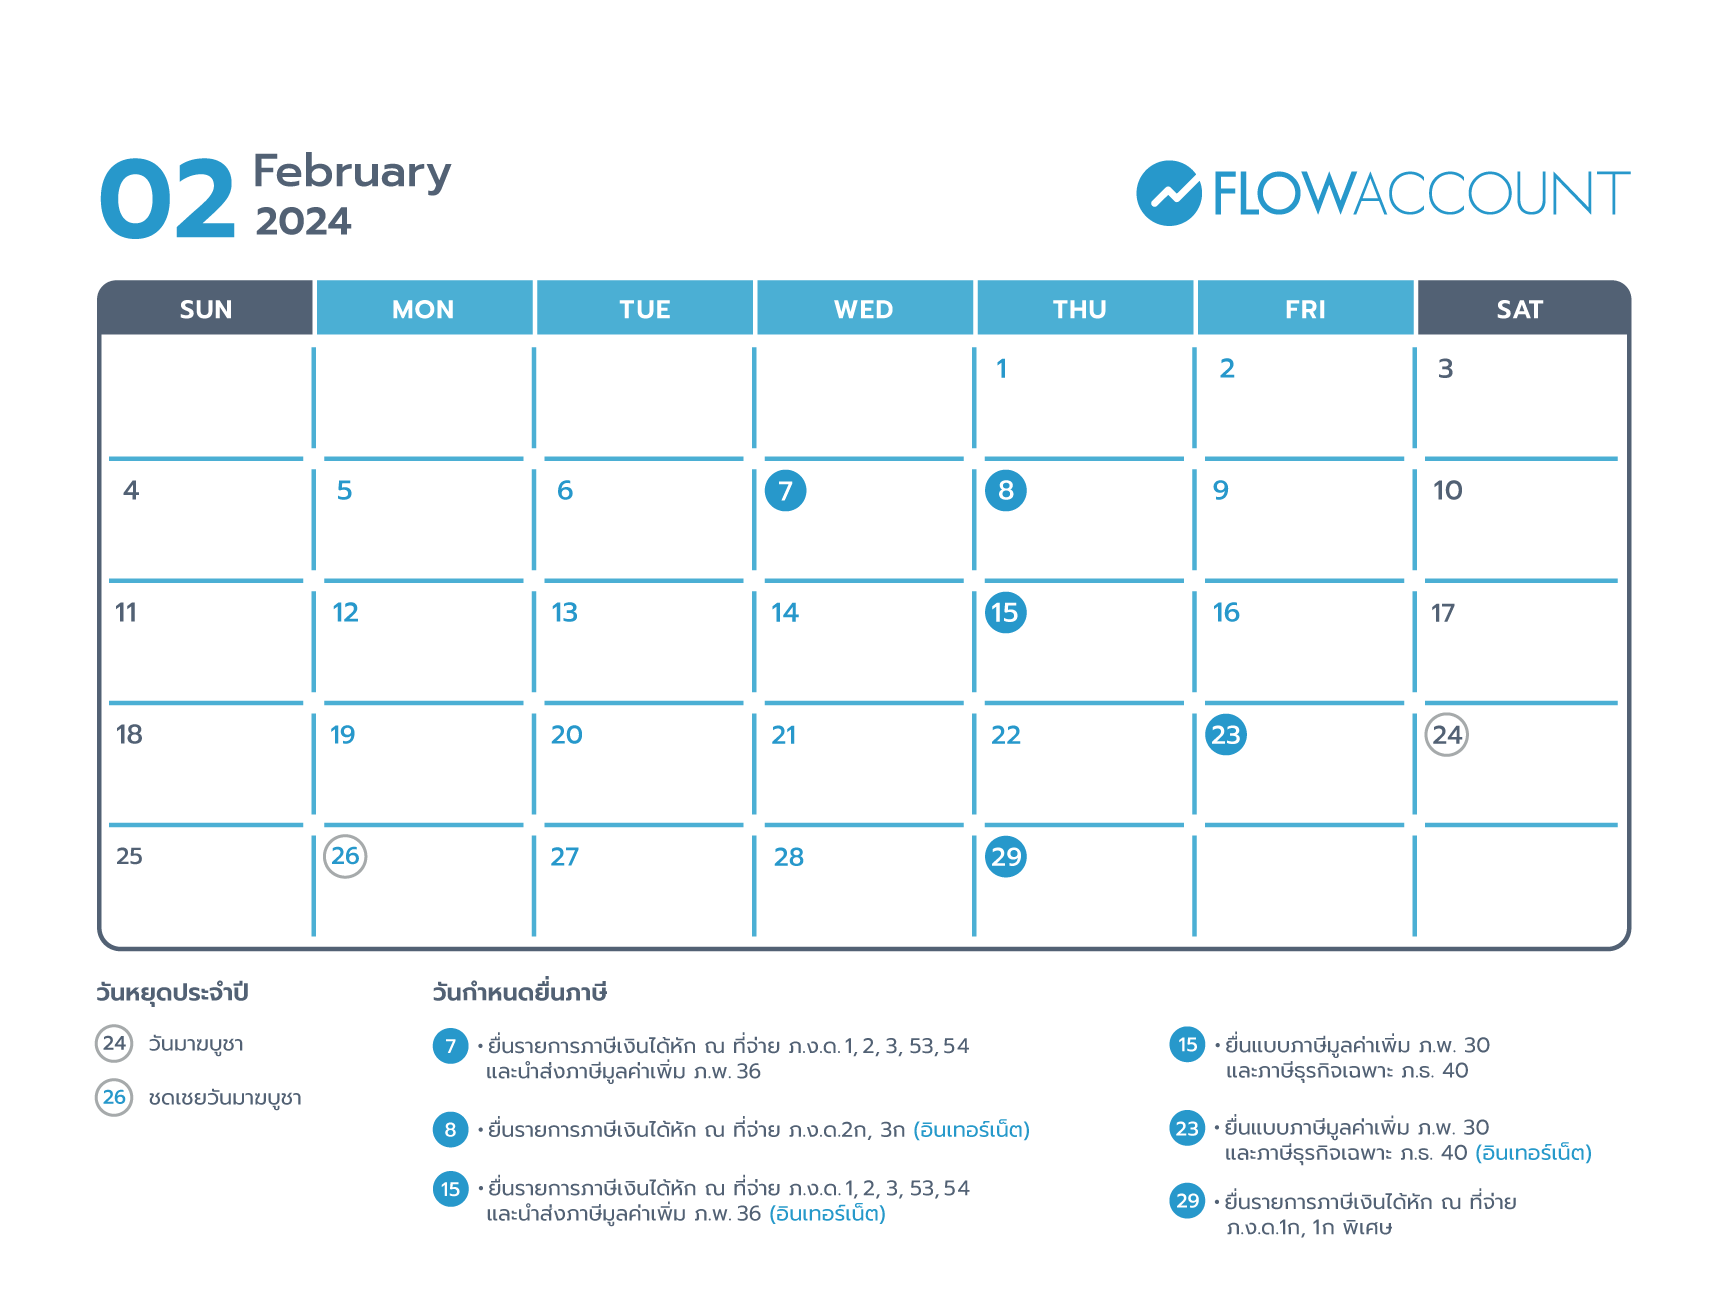 Tax calendar on February 2024